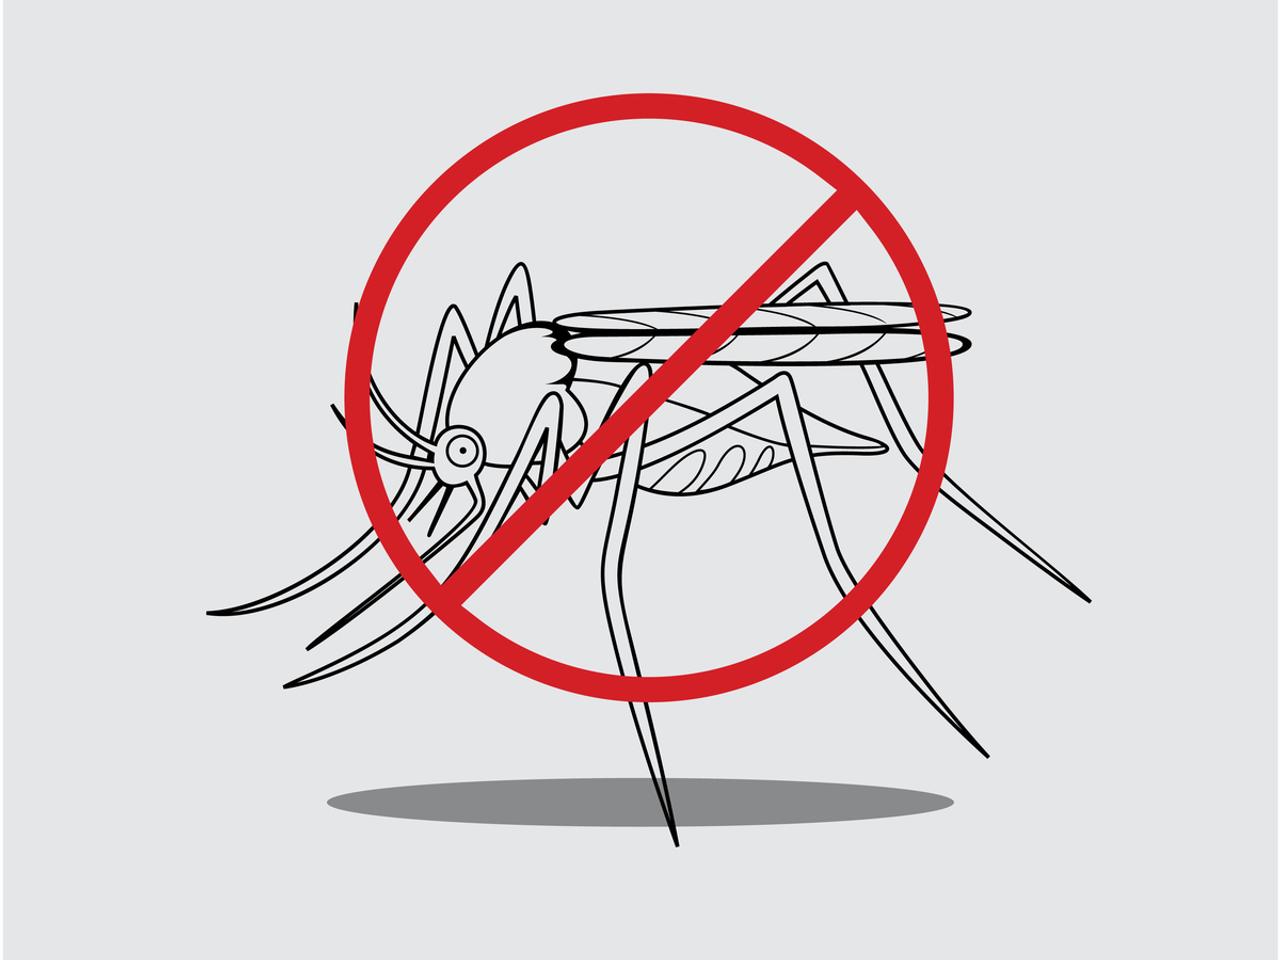 【閲覧注意】害虫格差は経済格差。殺虫剤が効かない虫と戦う21世紀のハンターたち